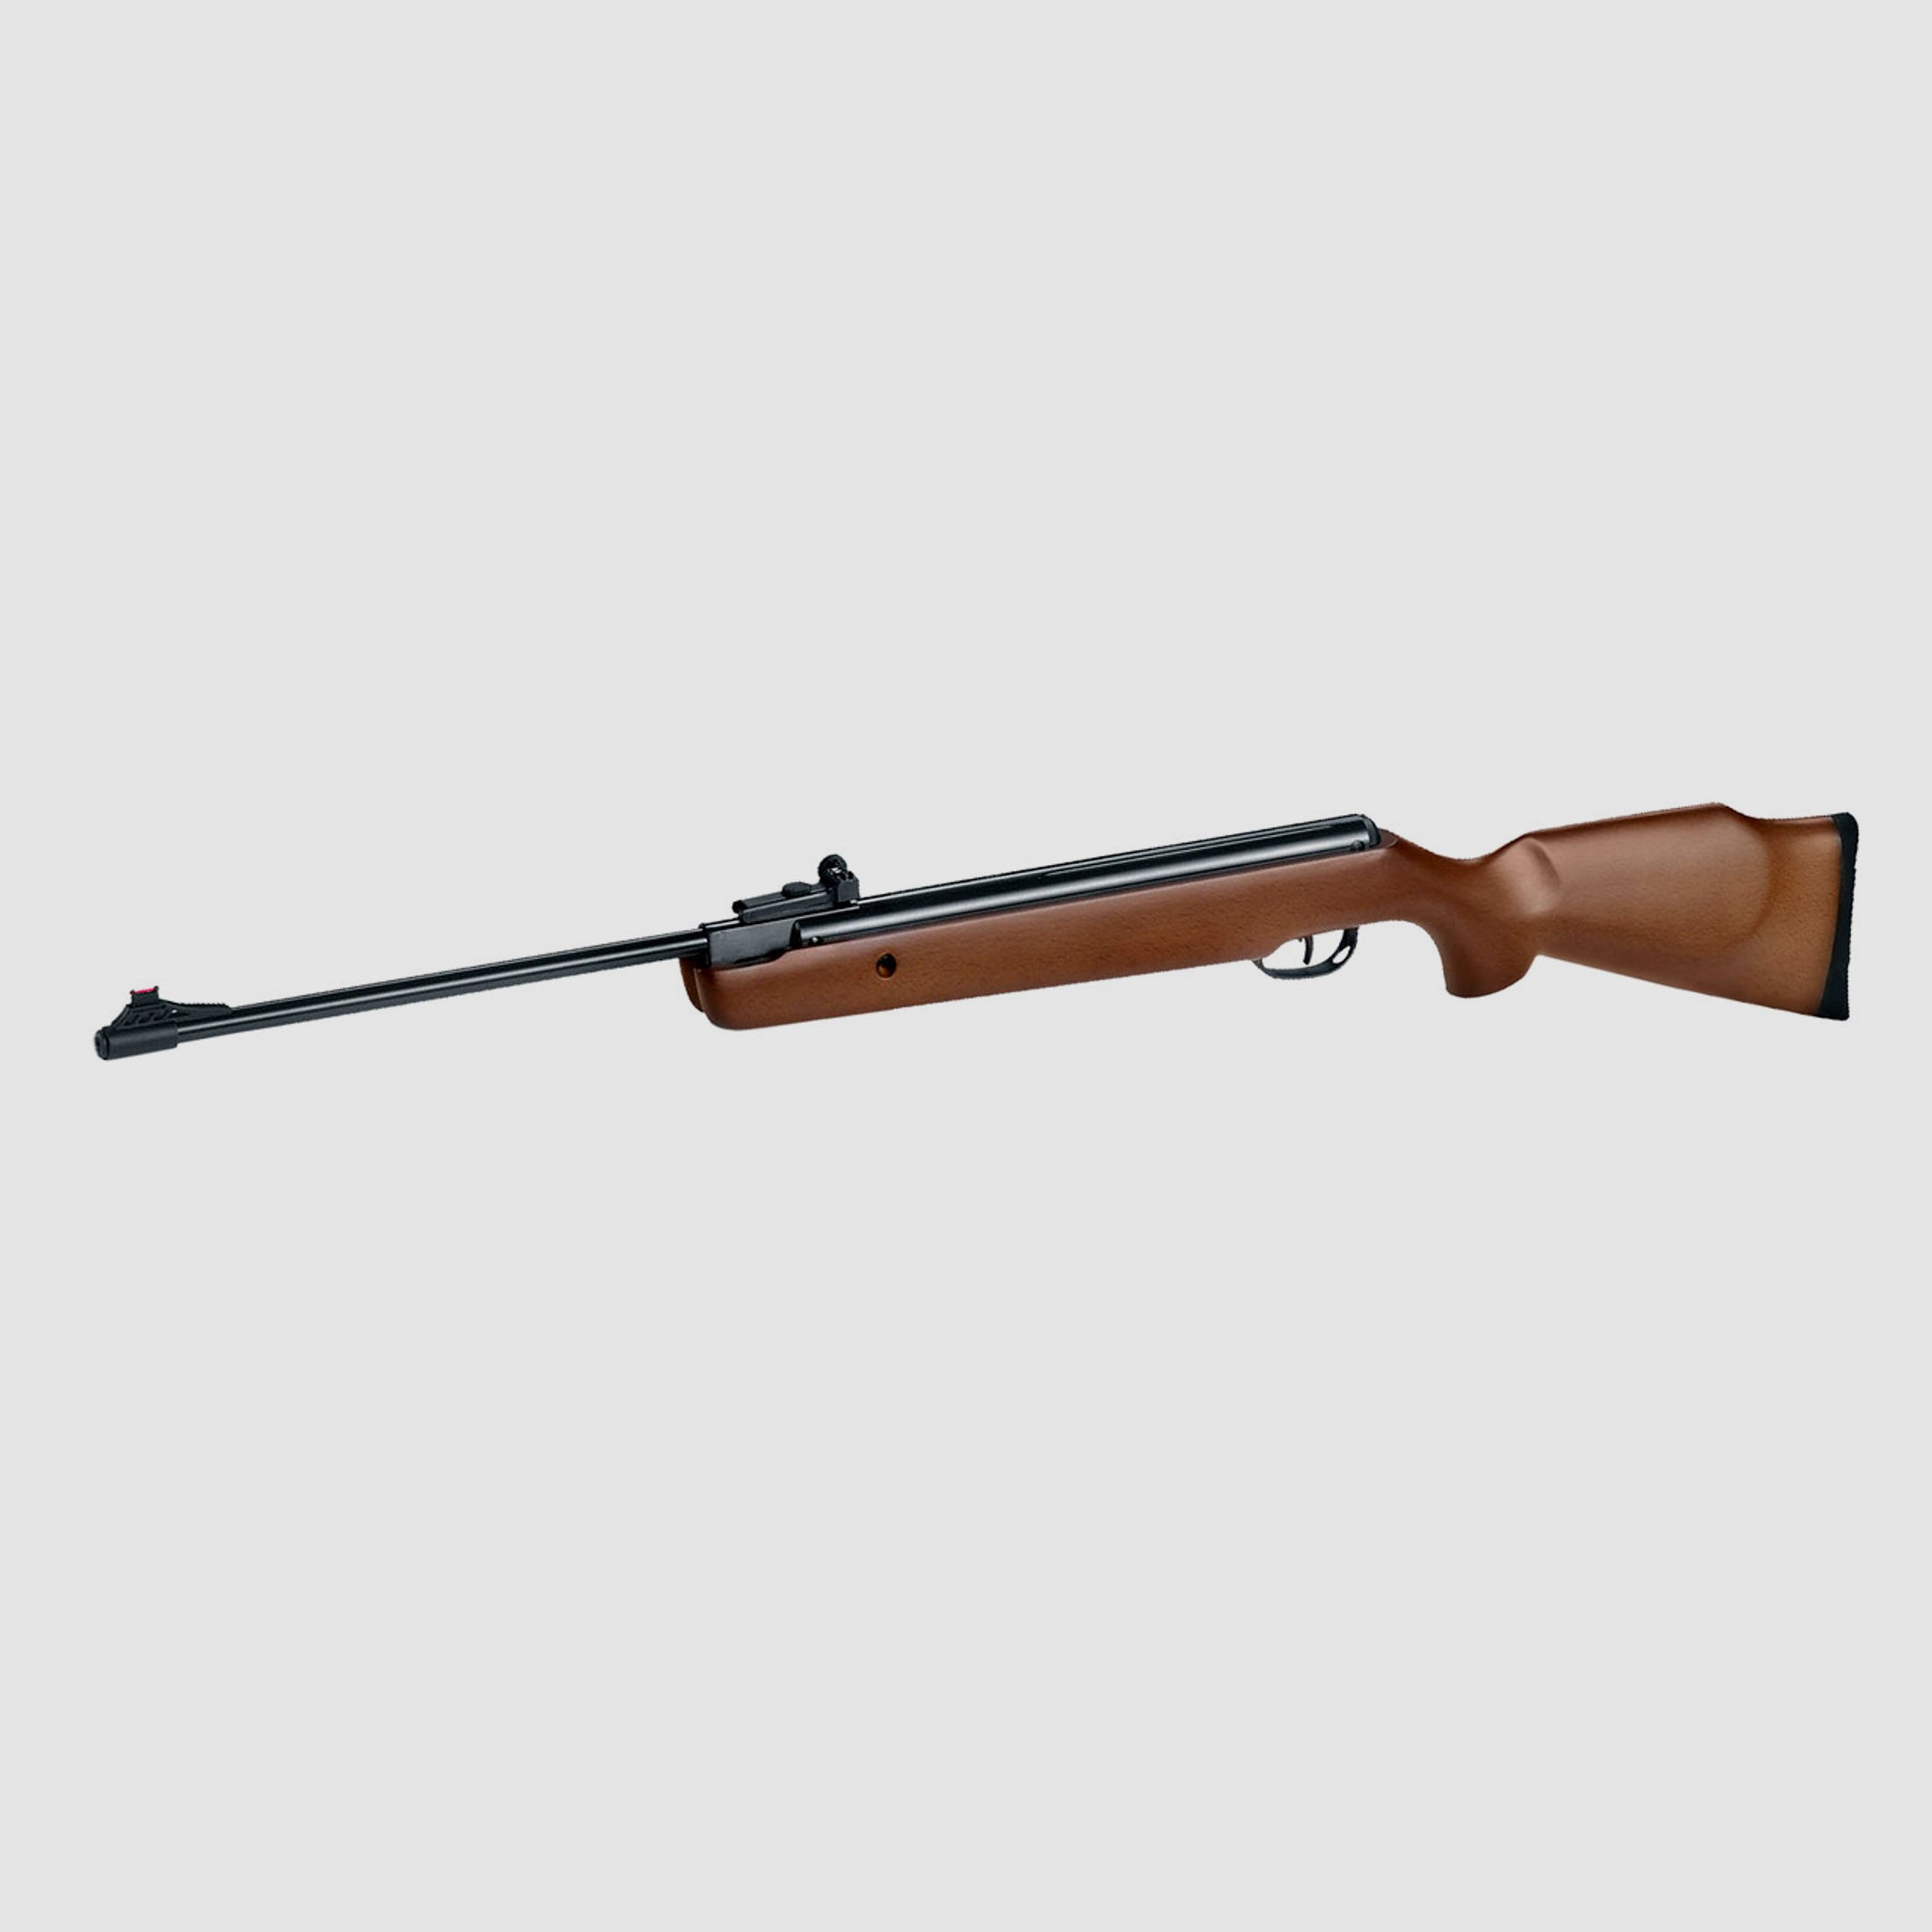 Knicklauf Luftgewehr HĂ¤mmerli Black Force 550 Holzschaft Kaliber 4,5 mm (P18)